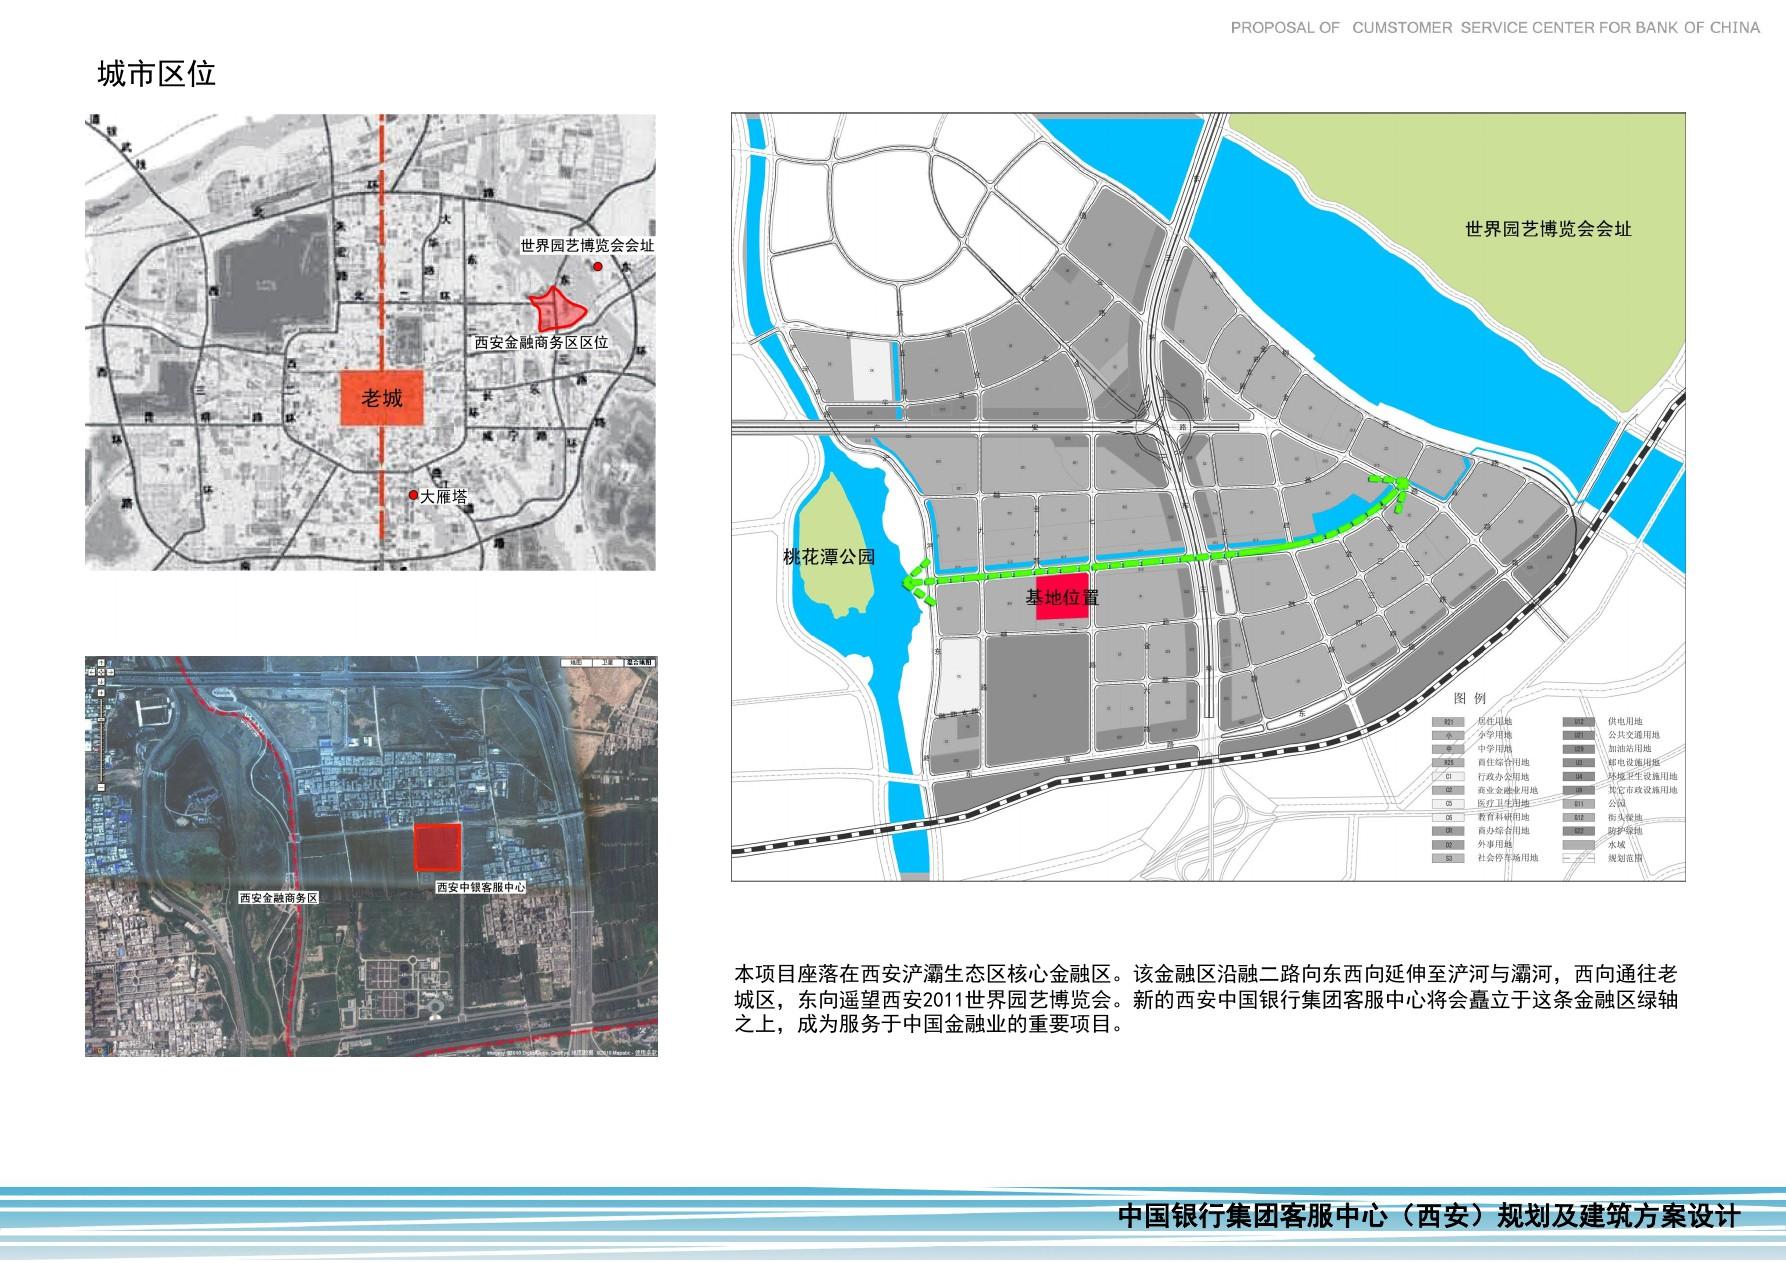 中国银行集团客服中心规划及建筑方案设计